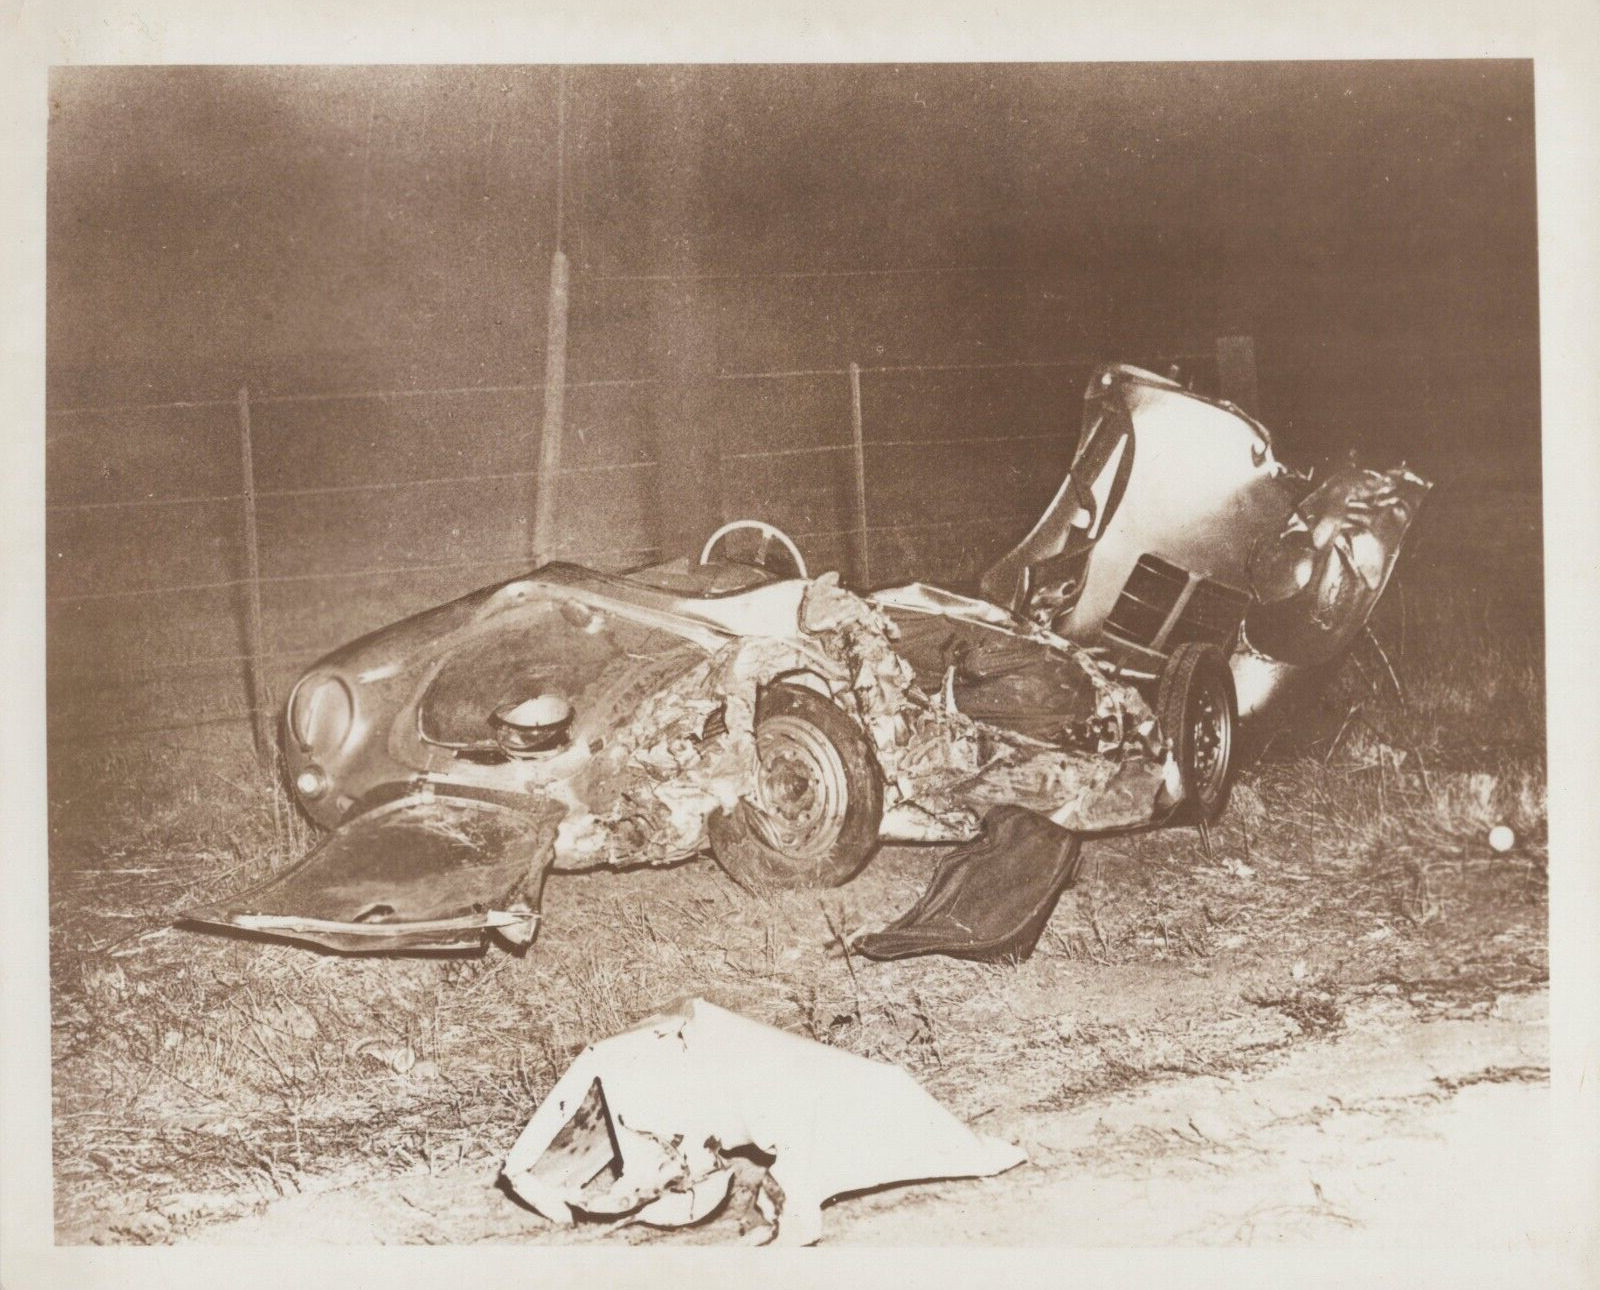 HOLLYWOOD LEGEND JAMES DEAN CAR CRASH TRAGEDY 1955 ORIG VINTAGE Photo C38